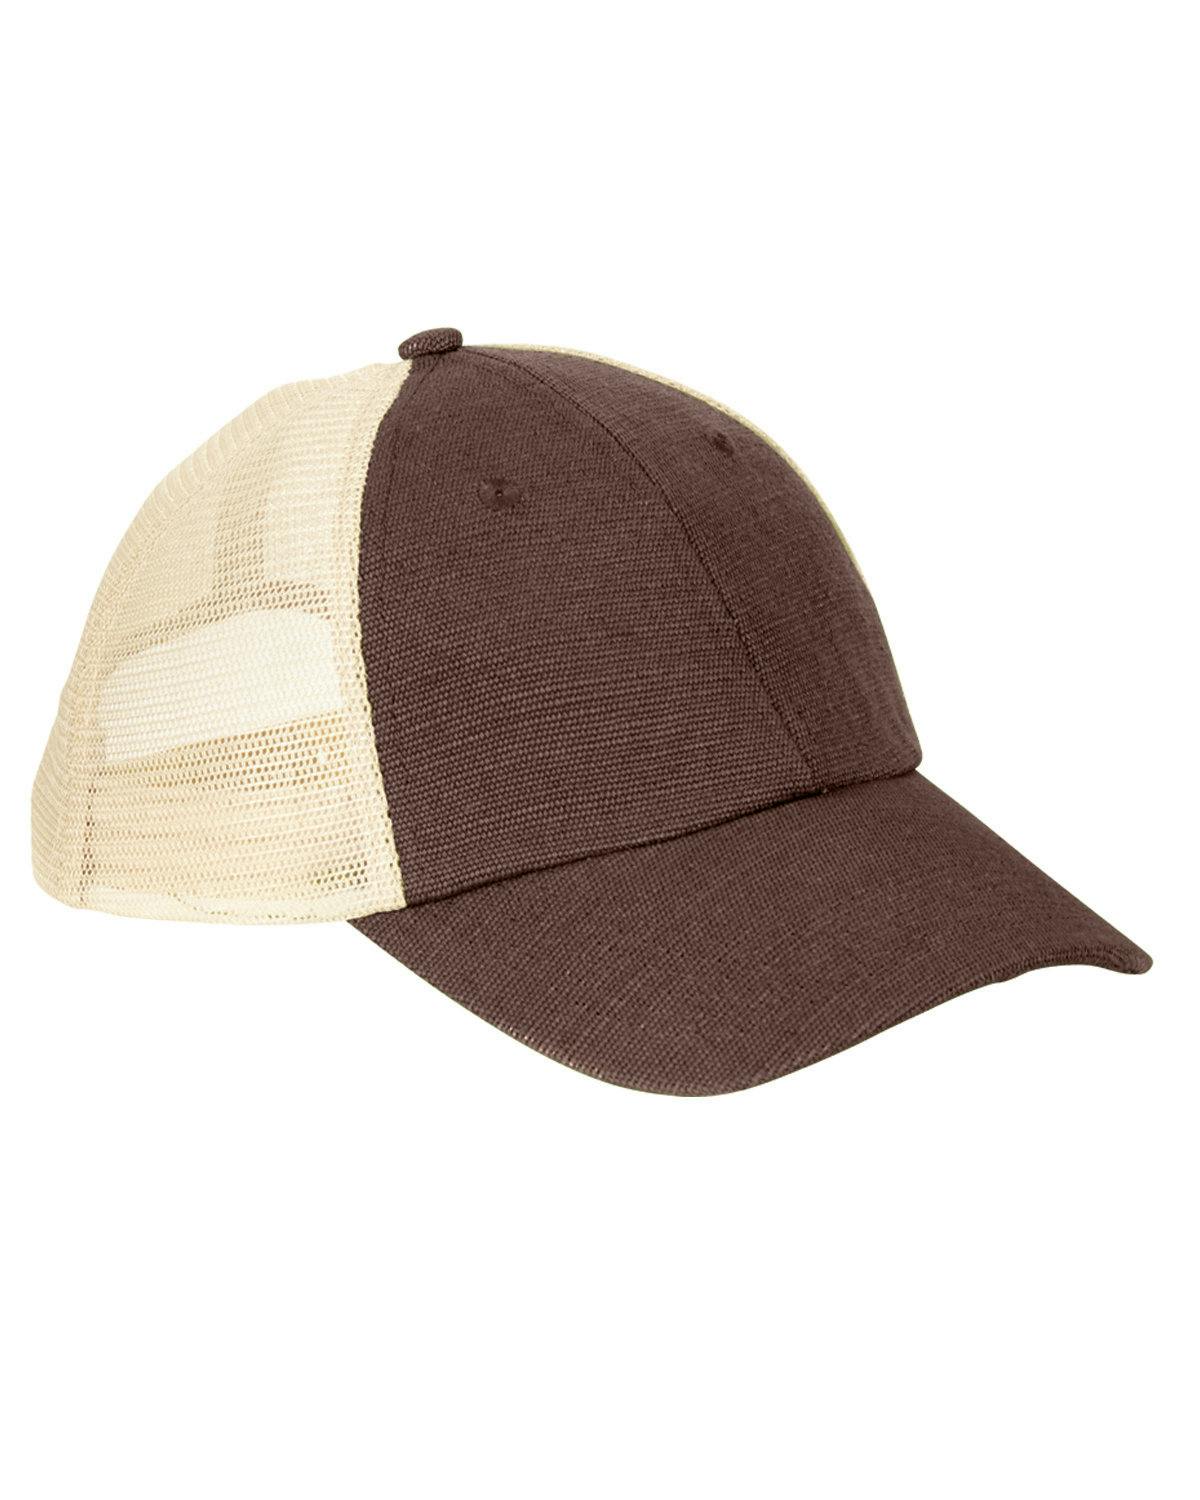 Image for Washed Hemp Blend Trucker Hat